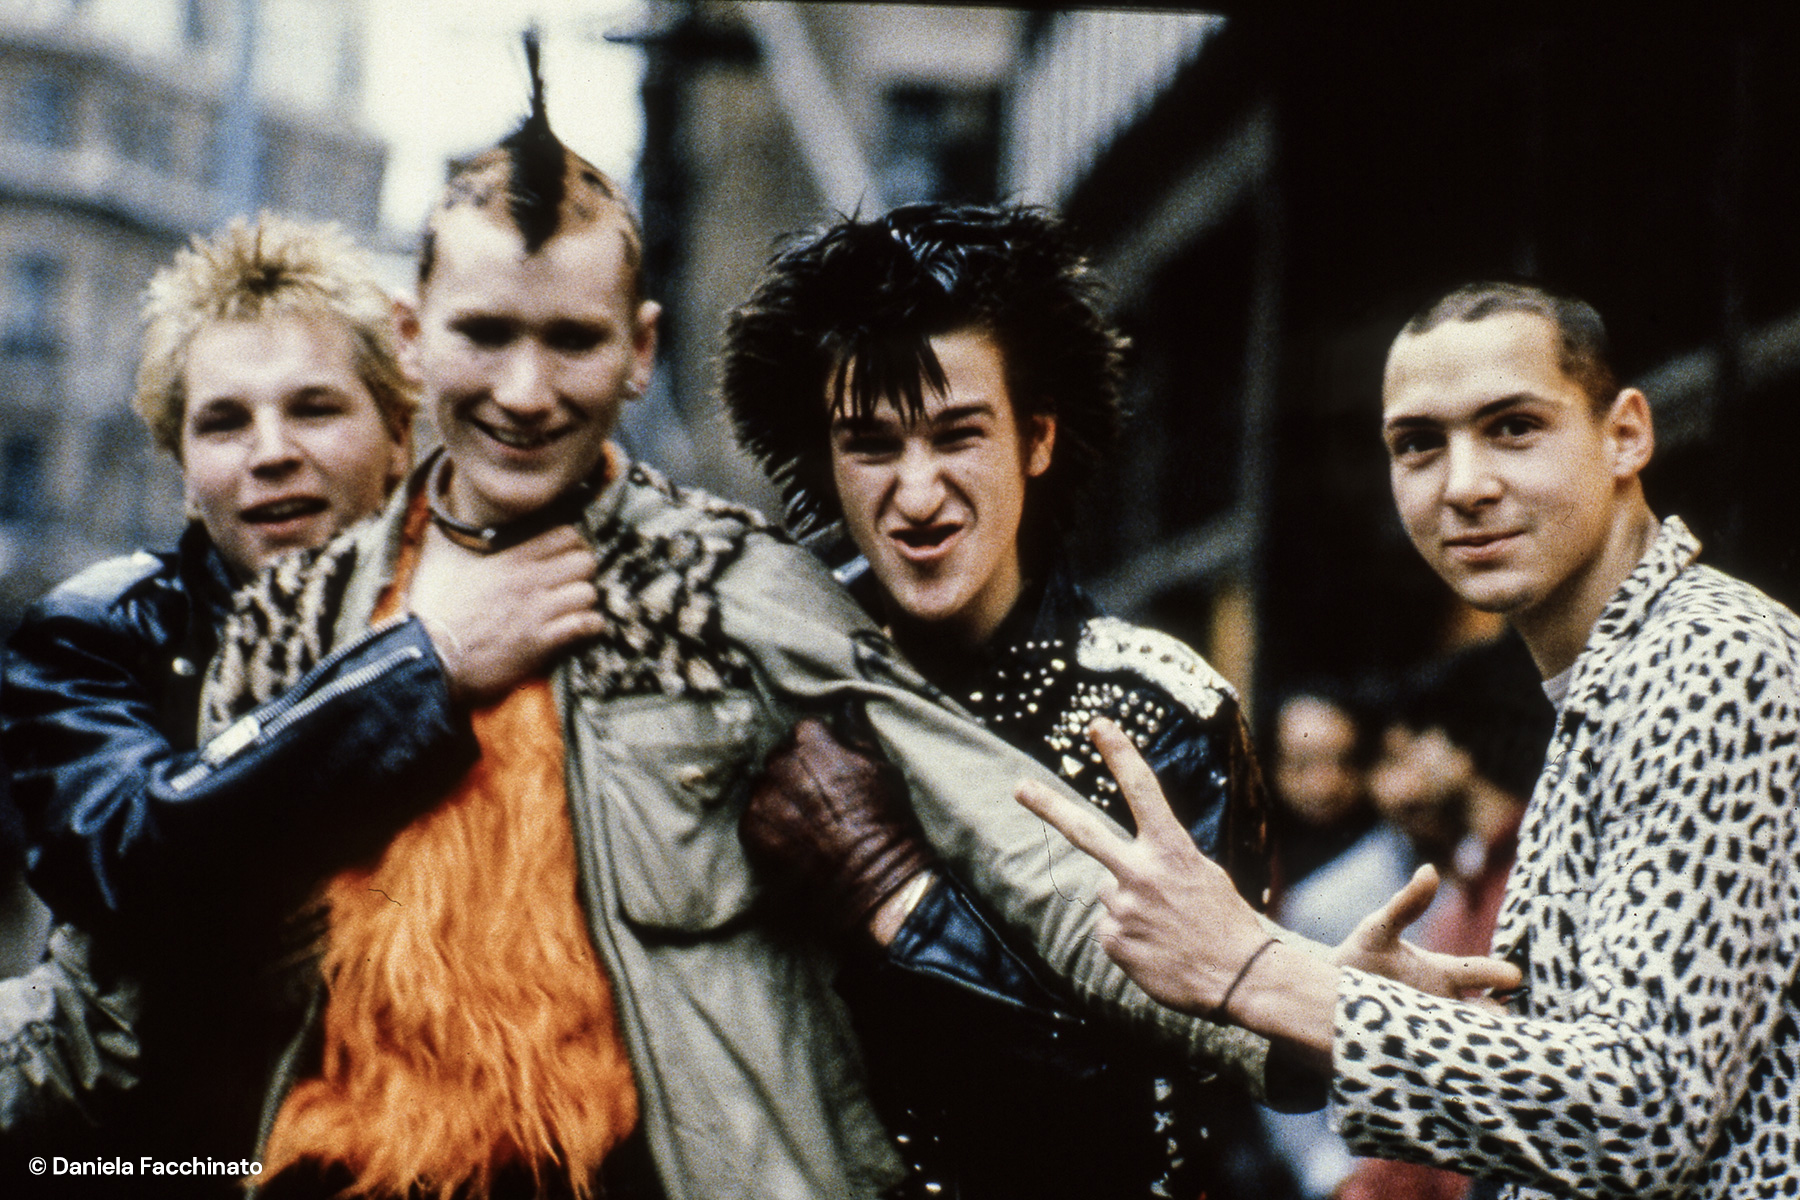 London punks, 1982